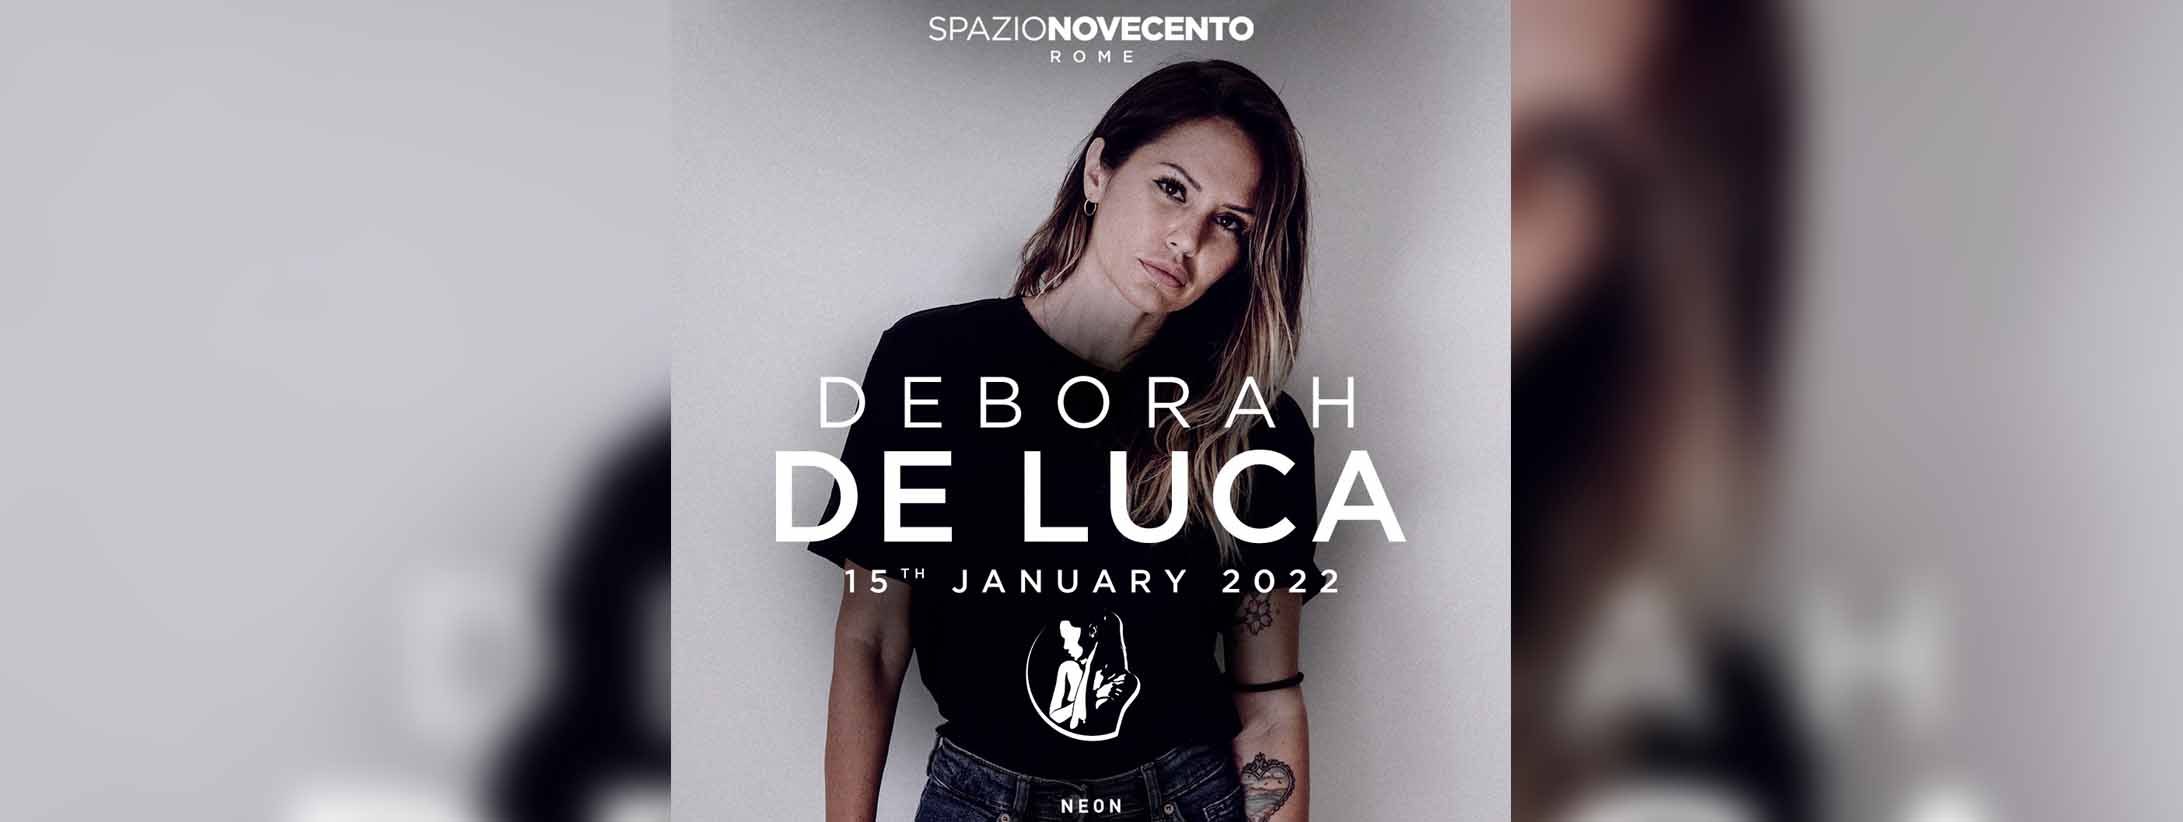 Deborah De Luca Spazio Novecento 15 Gennaio 2022